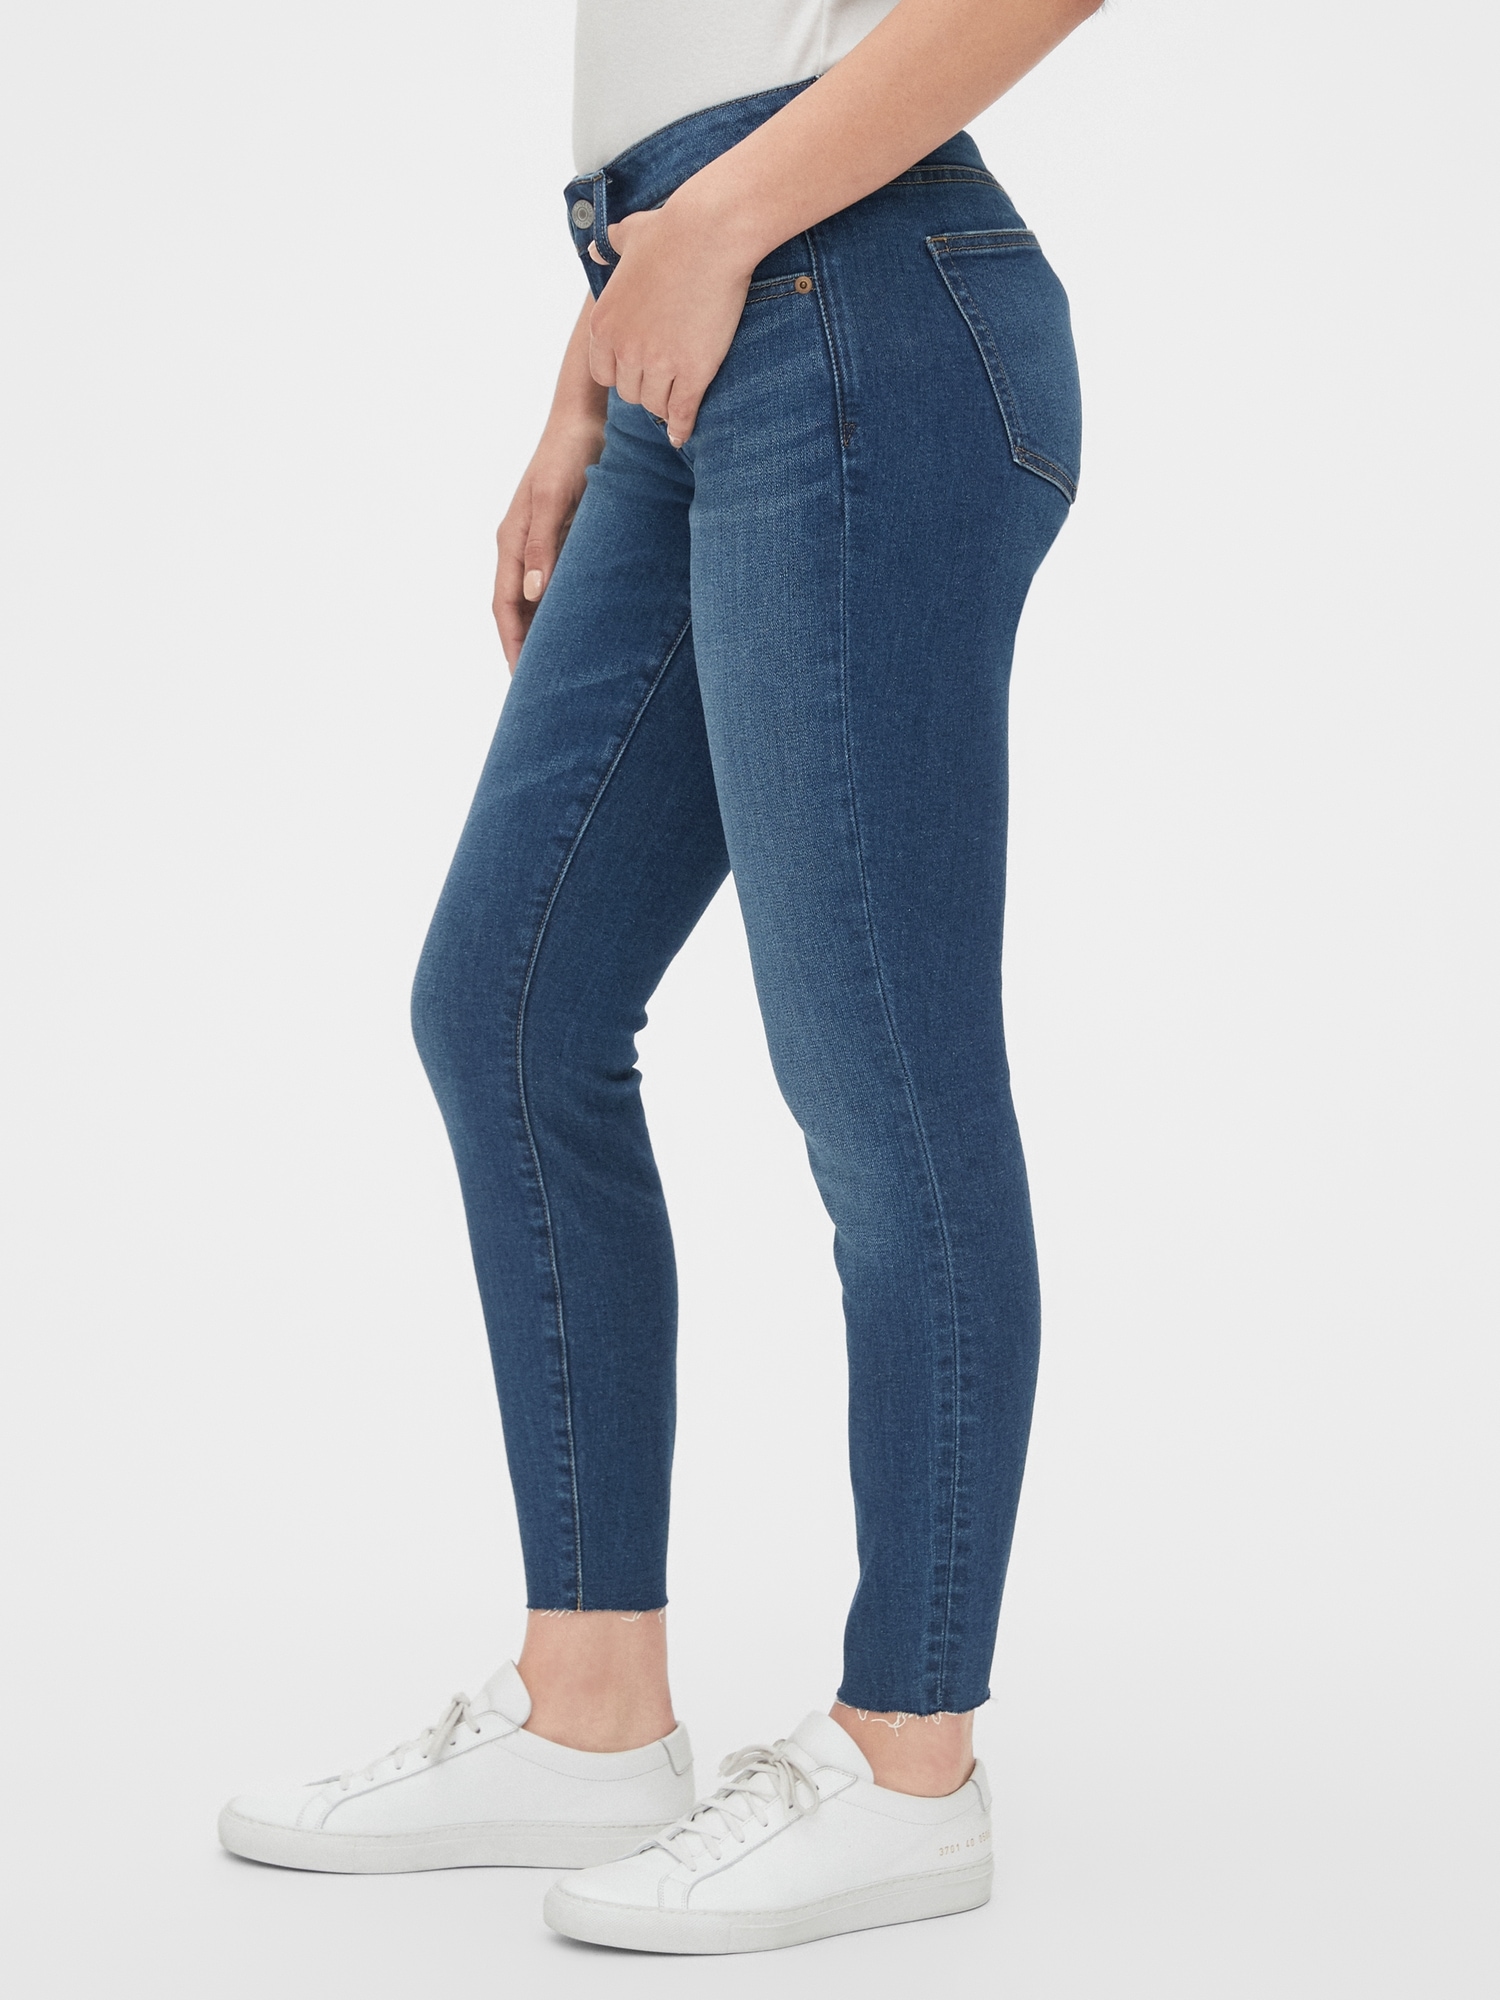 medium denim jeans